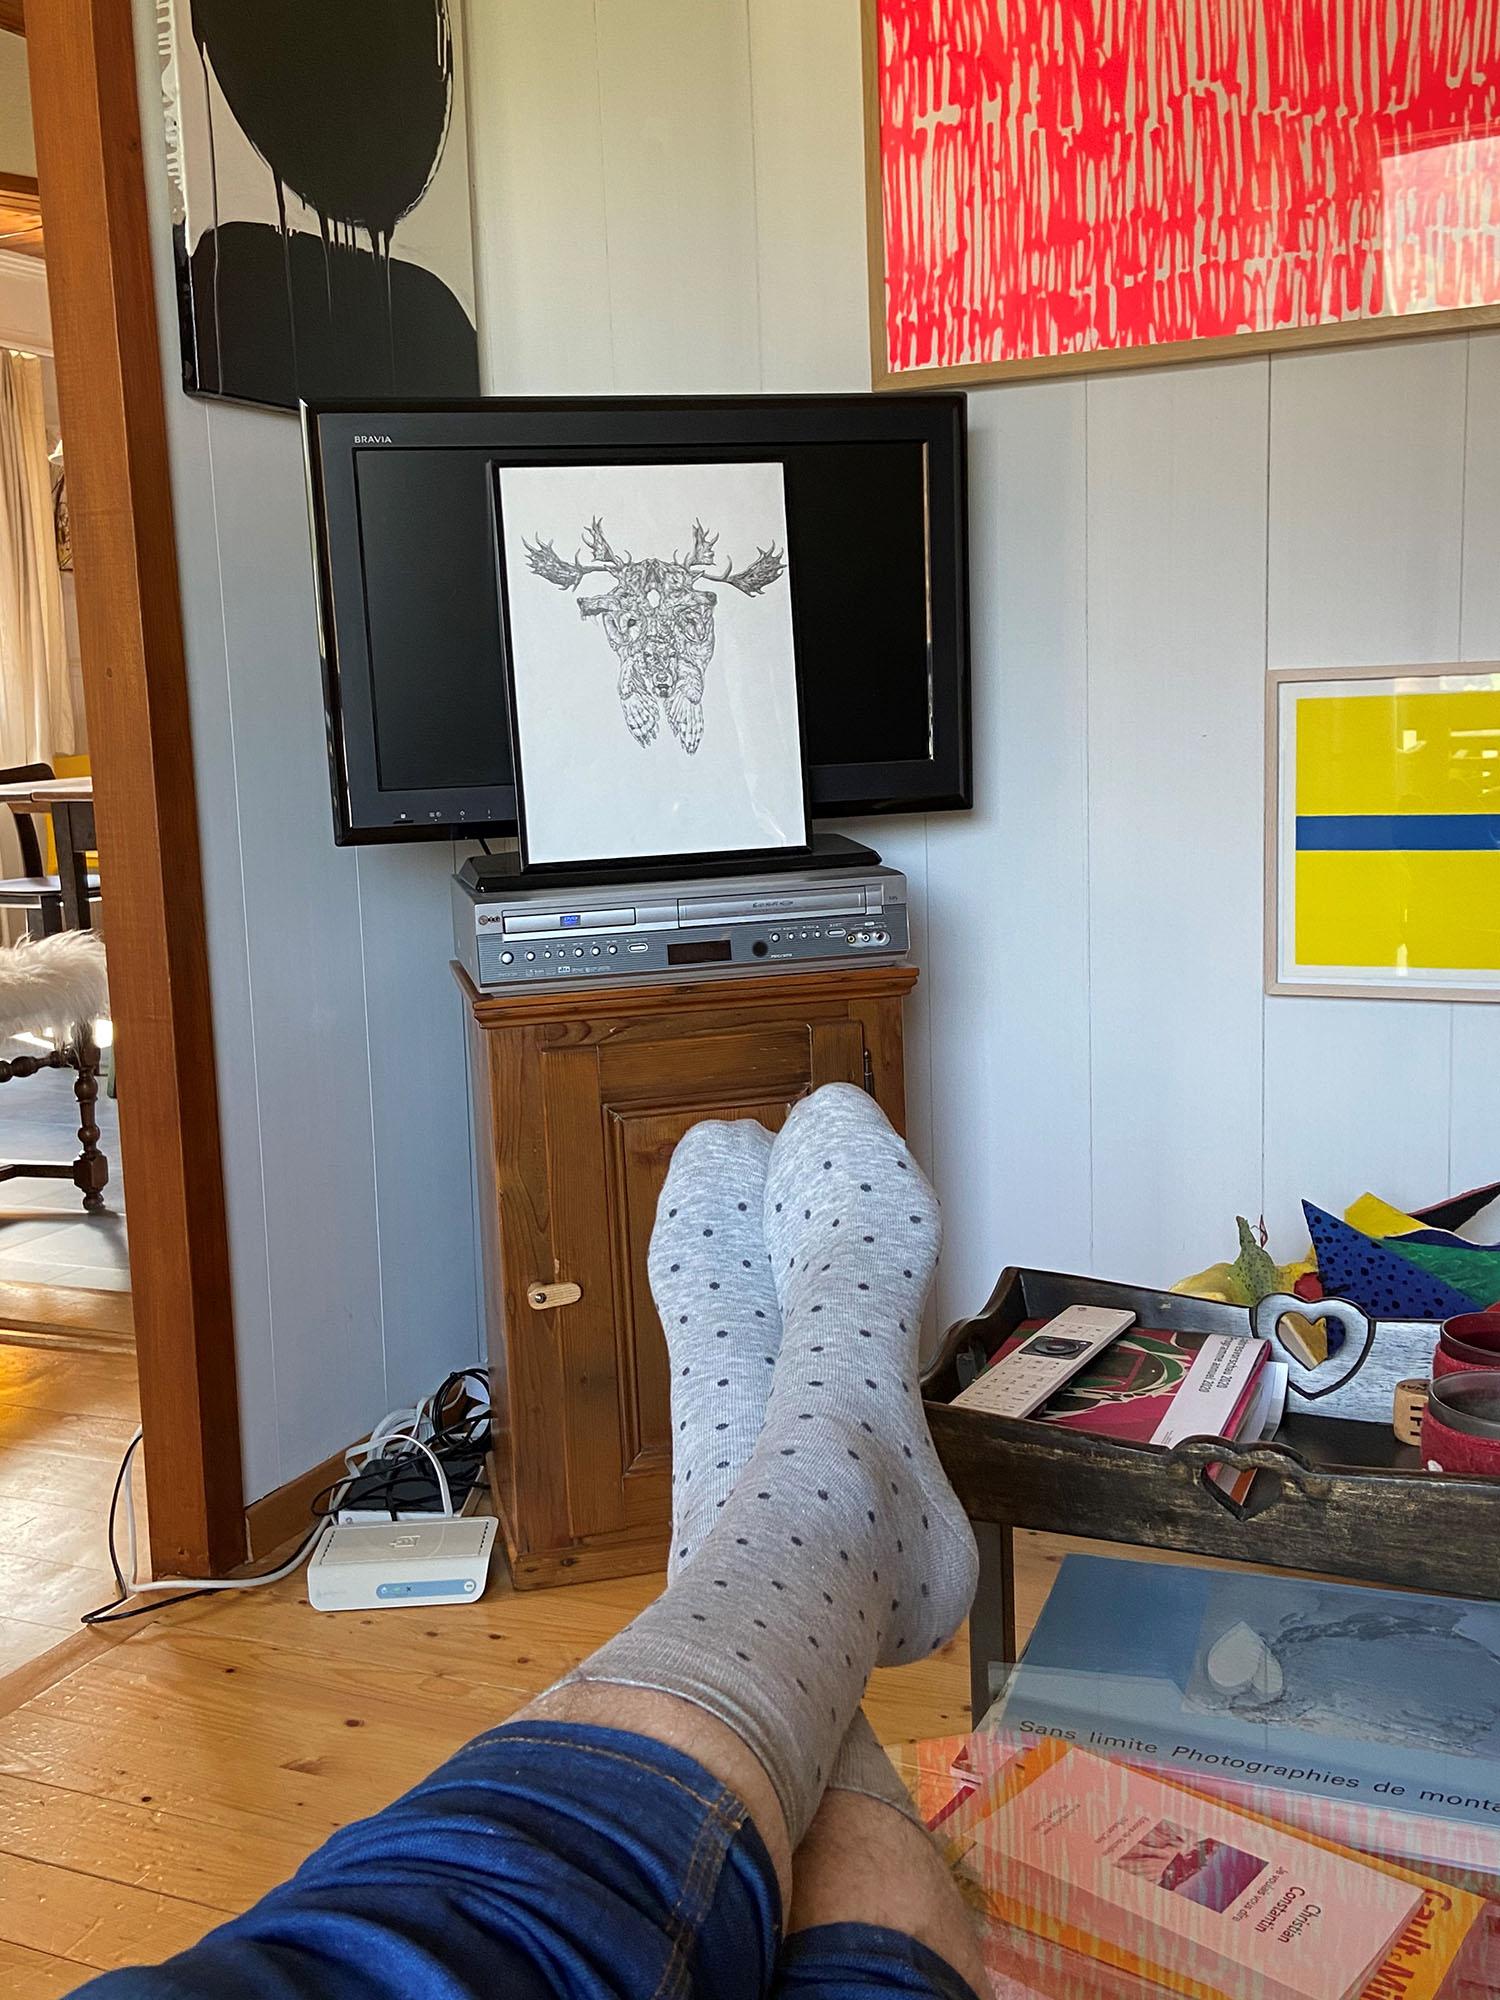 Tableau-TV 59, une œuvre de l'artiste David Weishaar et des chaussettes à petits-pois. [DR - Laurent Delaloye]